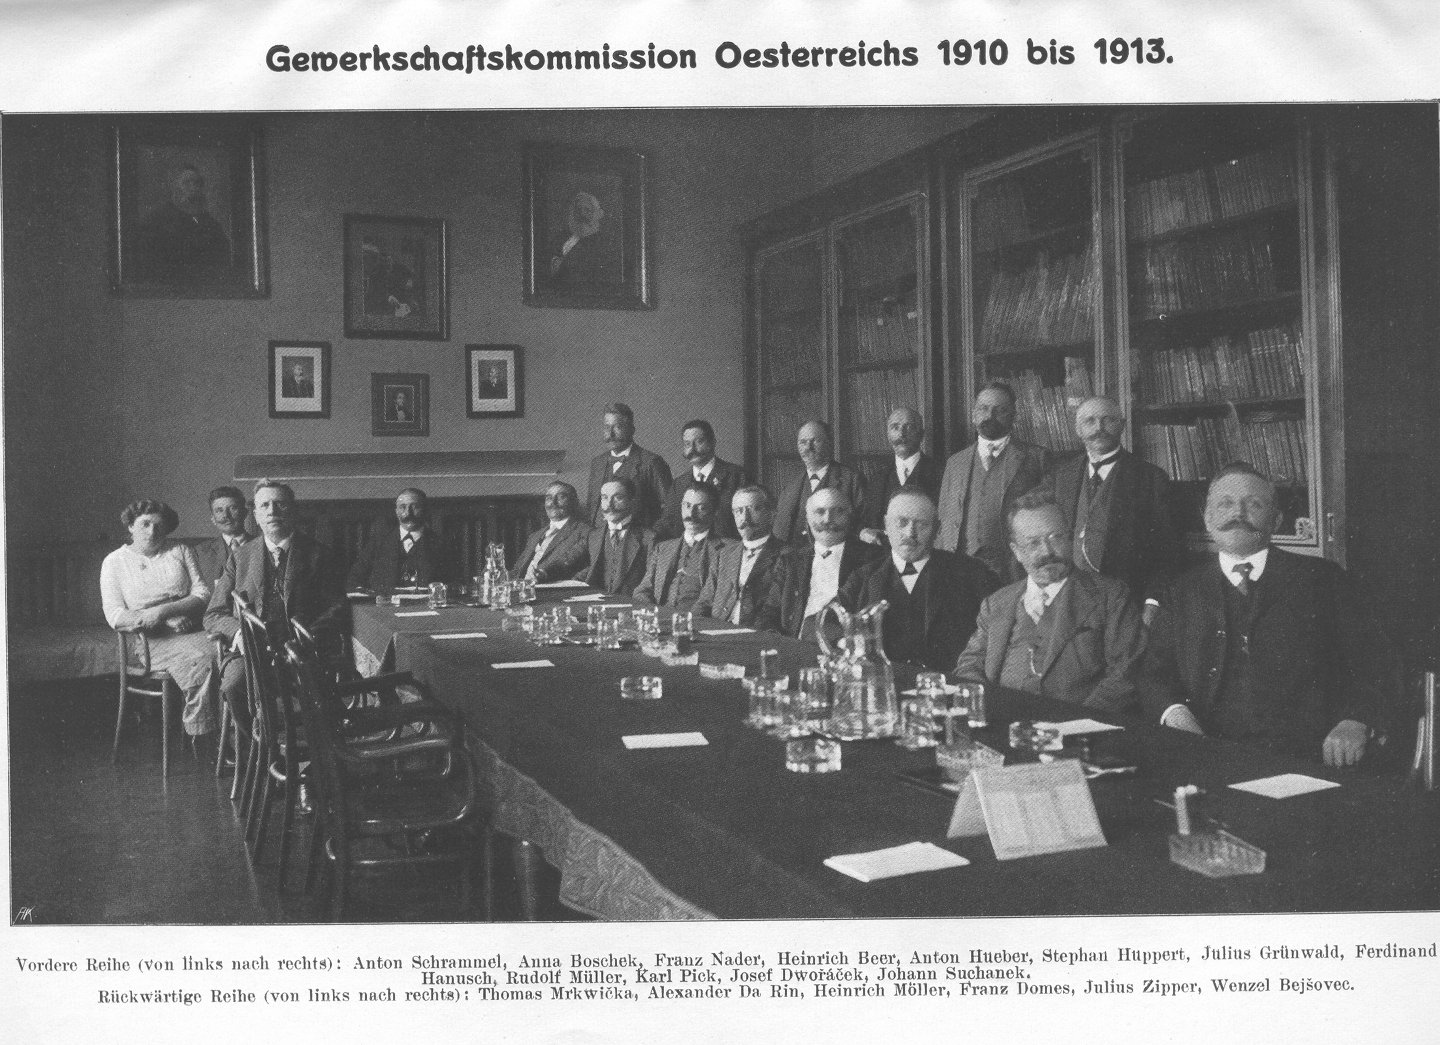 Reichsgewerkschaftskommission 1910-1913, 5. v. r. sitzend Ferdinand Hanusch 